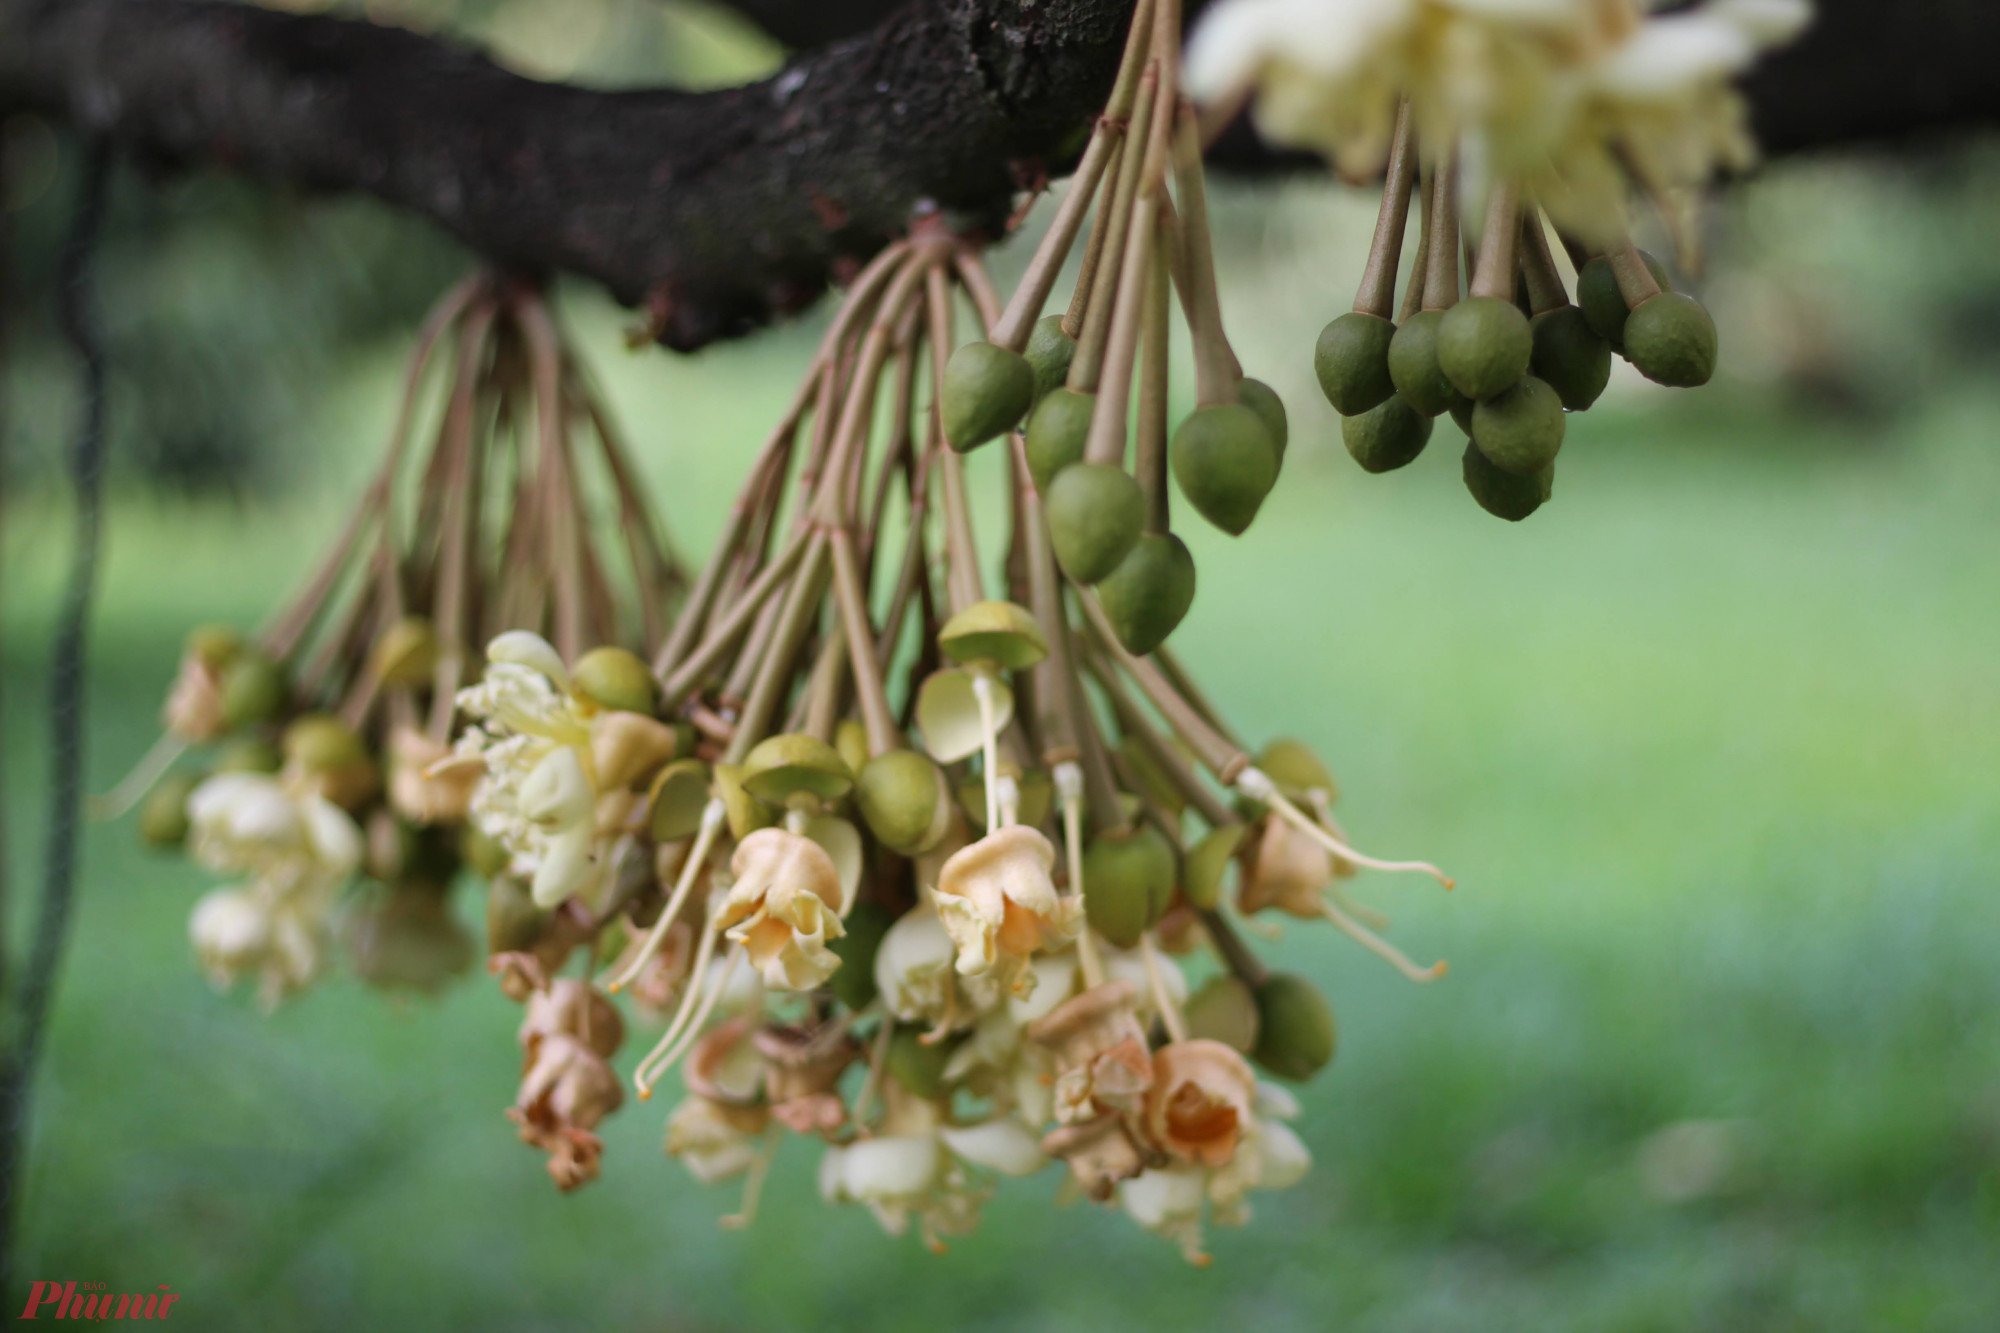 Sầu riêng Đạ Huoai chín rộ từ cuối tháng 5 đến hết tháng 8, song từ trước tết Nguyên đán và sau thời gian này, vẫn có một số vườn chín trước hoặc chín sau. Điều này phụ thuộc vào thời gian nở hoa của cây sầu riêng - thông thường, từ khi hoa nở đến thu hoạch khoảng 6 tháng. 